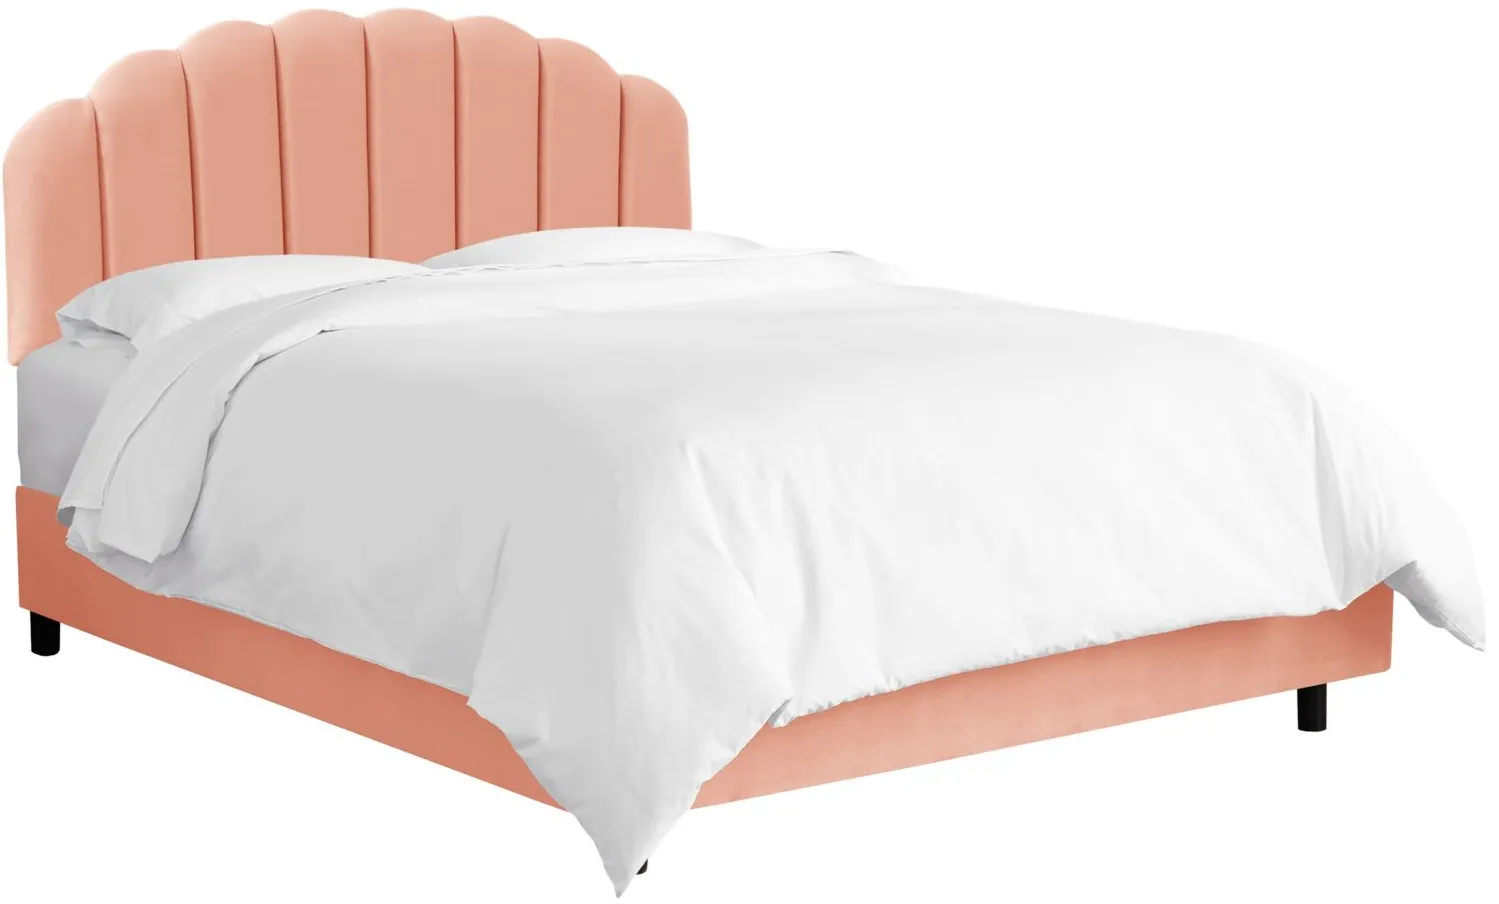 Tanner Bed in Velvet Blush by Skyline